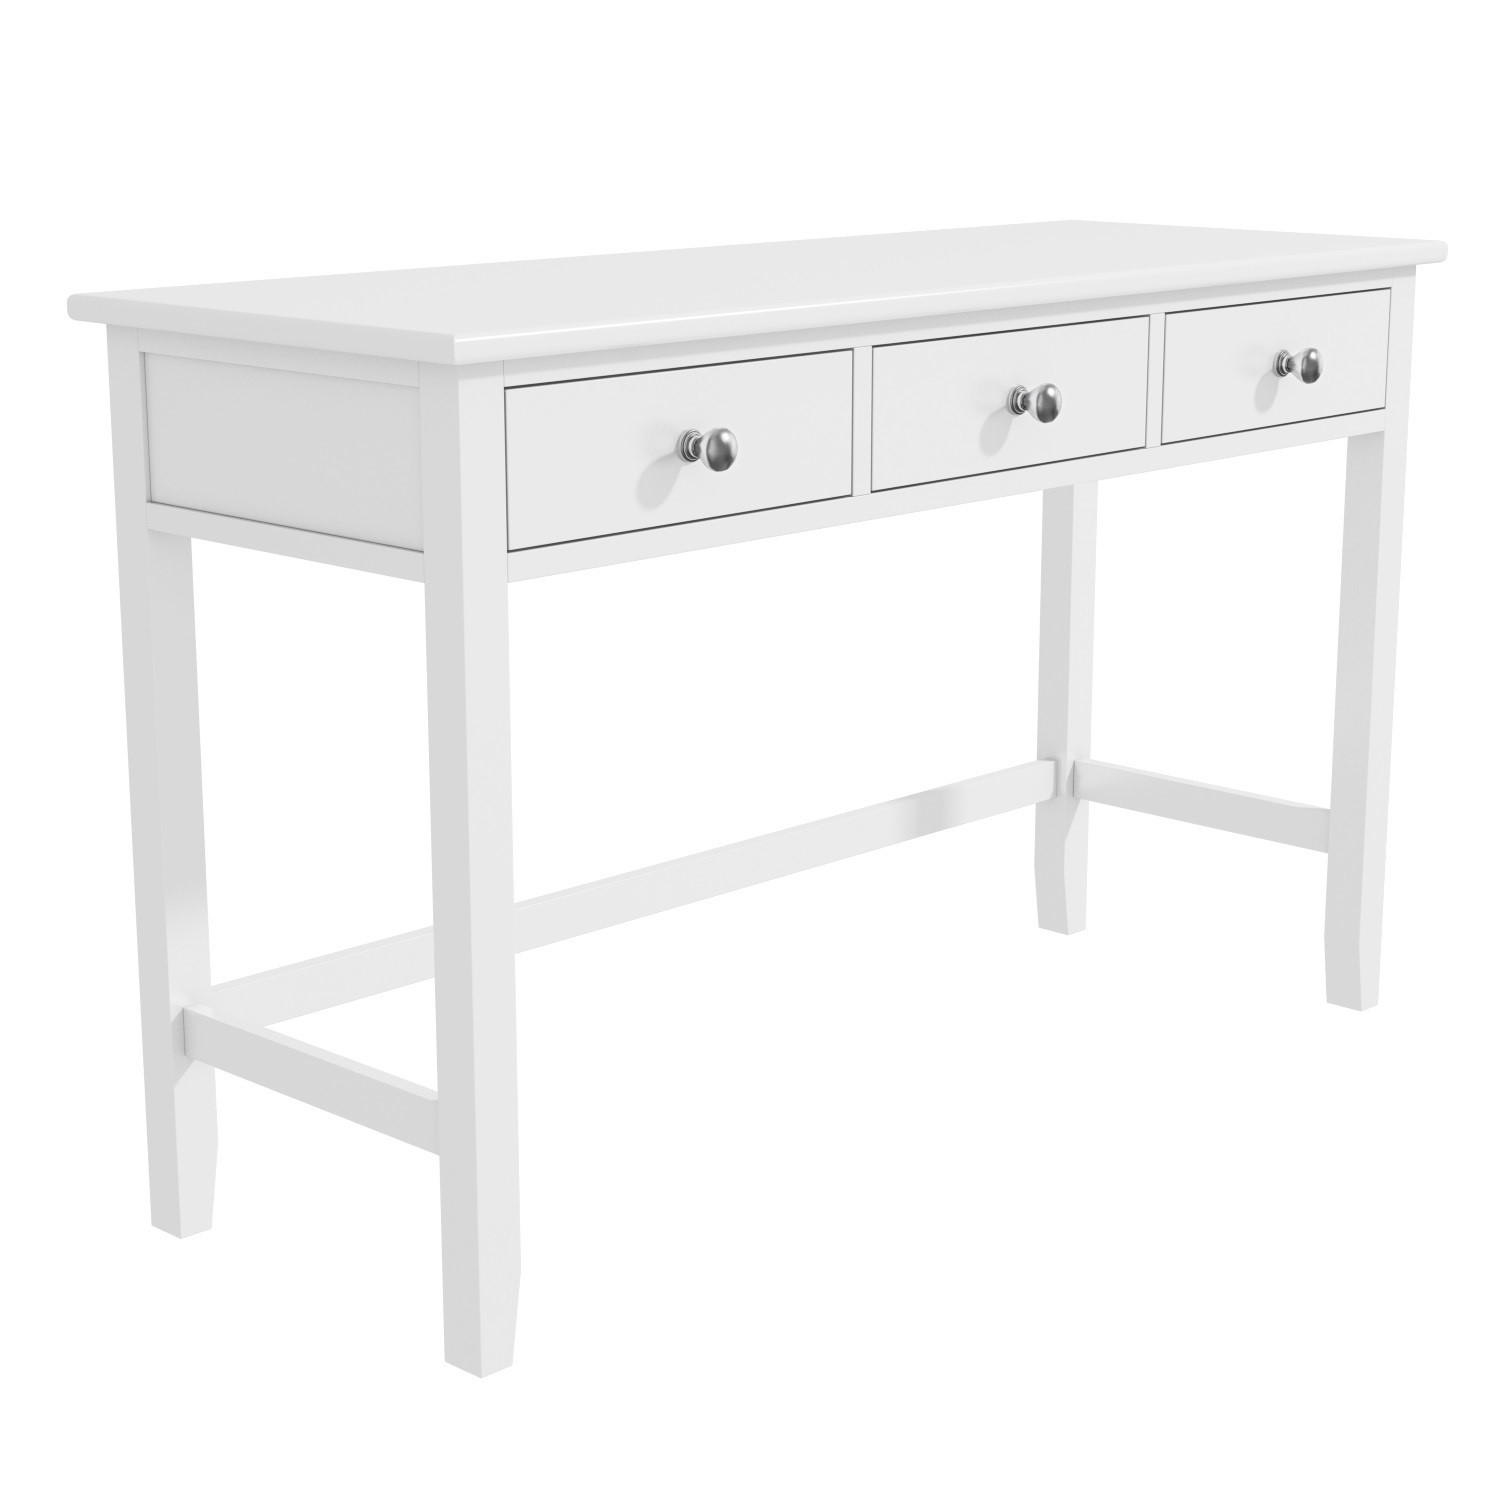 White Office Desk With Storage Harper Range Furniture123